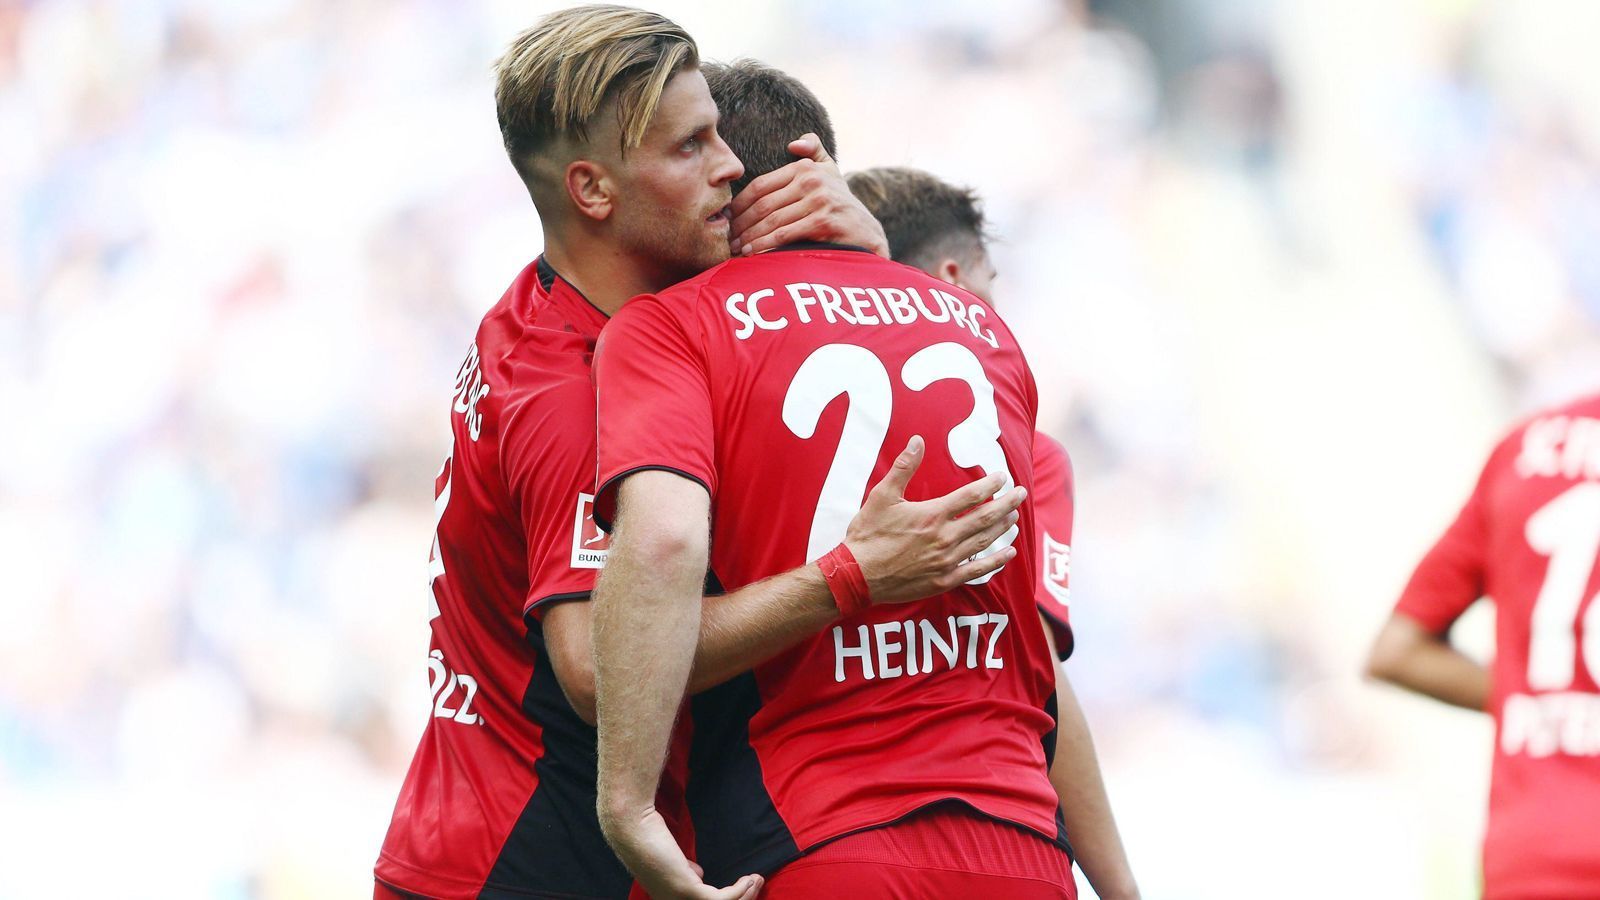 
                <strong>Platz 1 - SC Freiburg</strong><br>
                67,92 Prozent der Befragten sehen den SC Freiburg als "sympathisch" an.
              